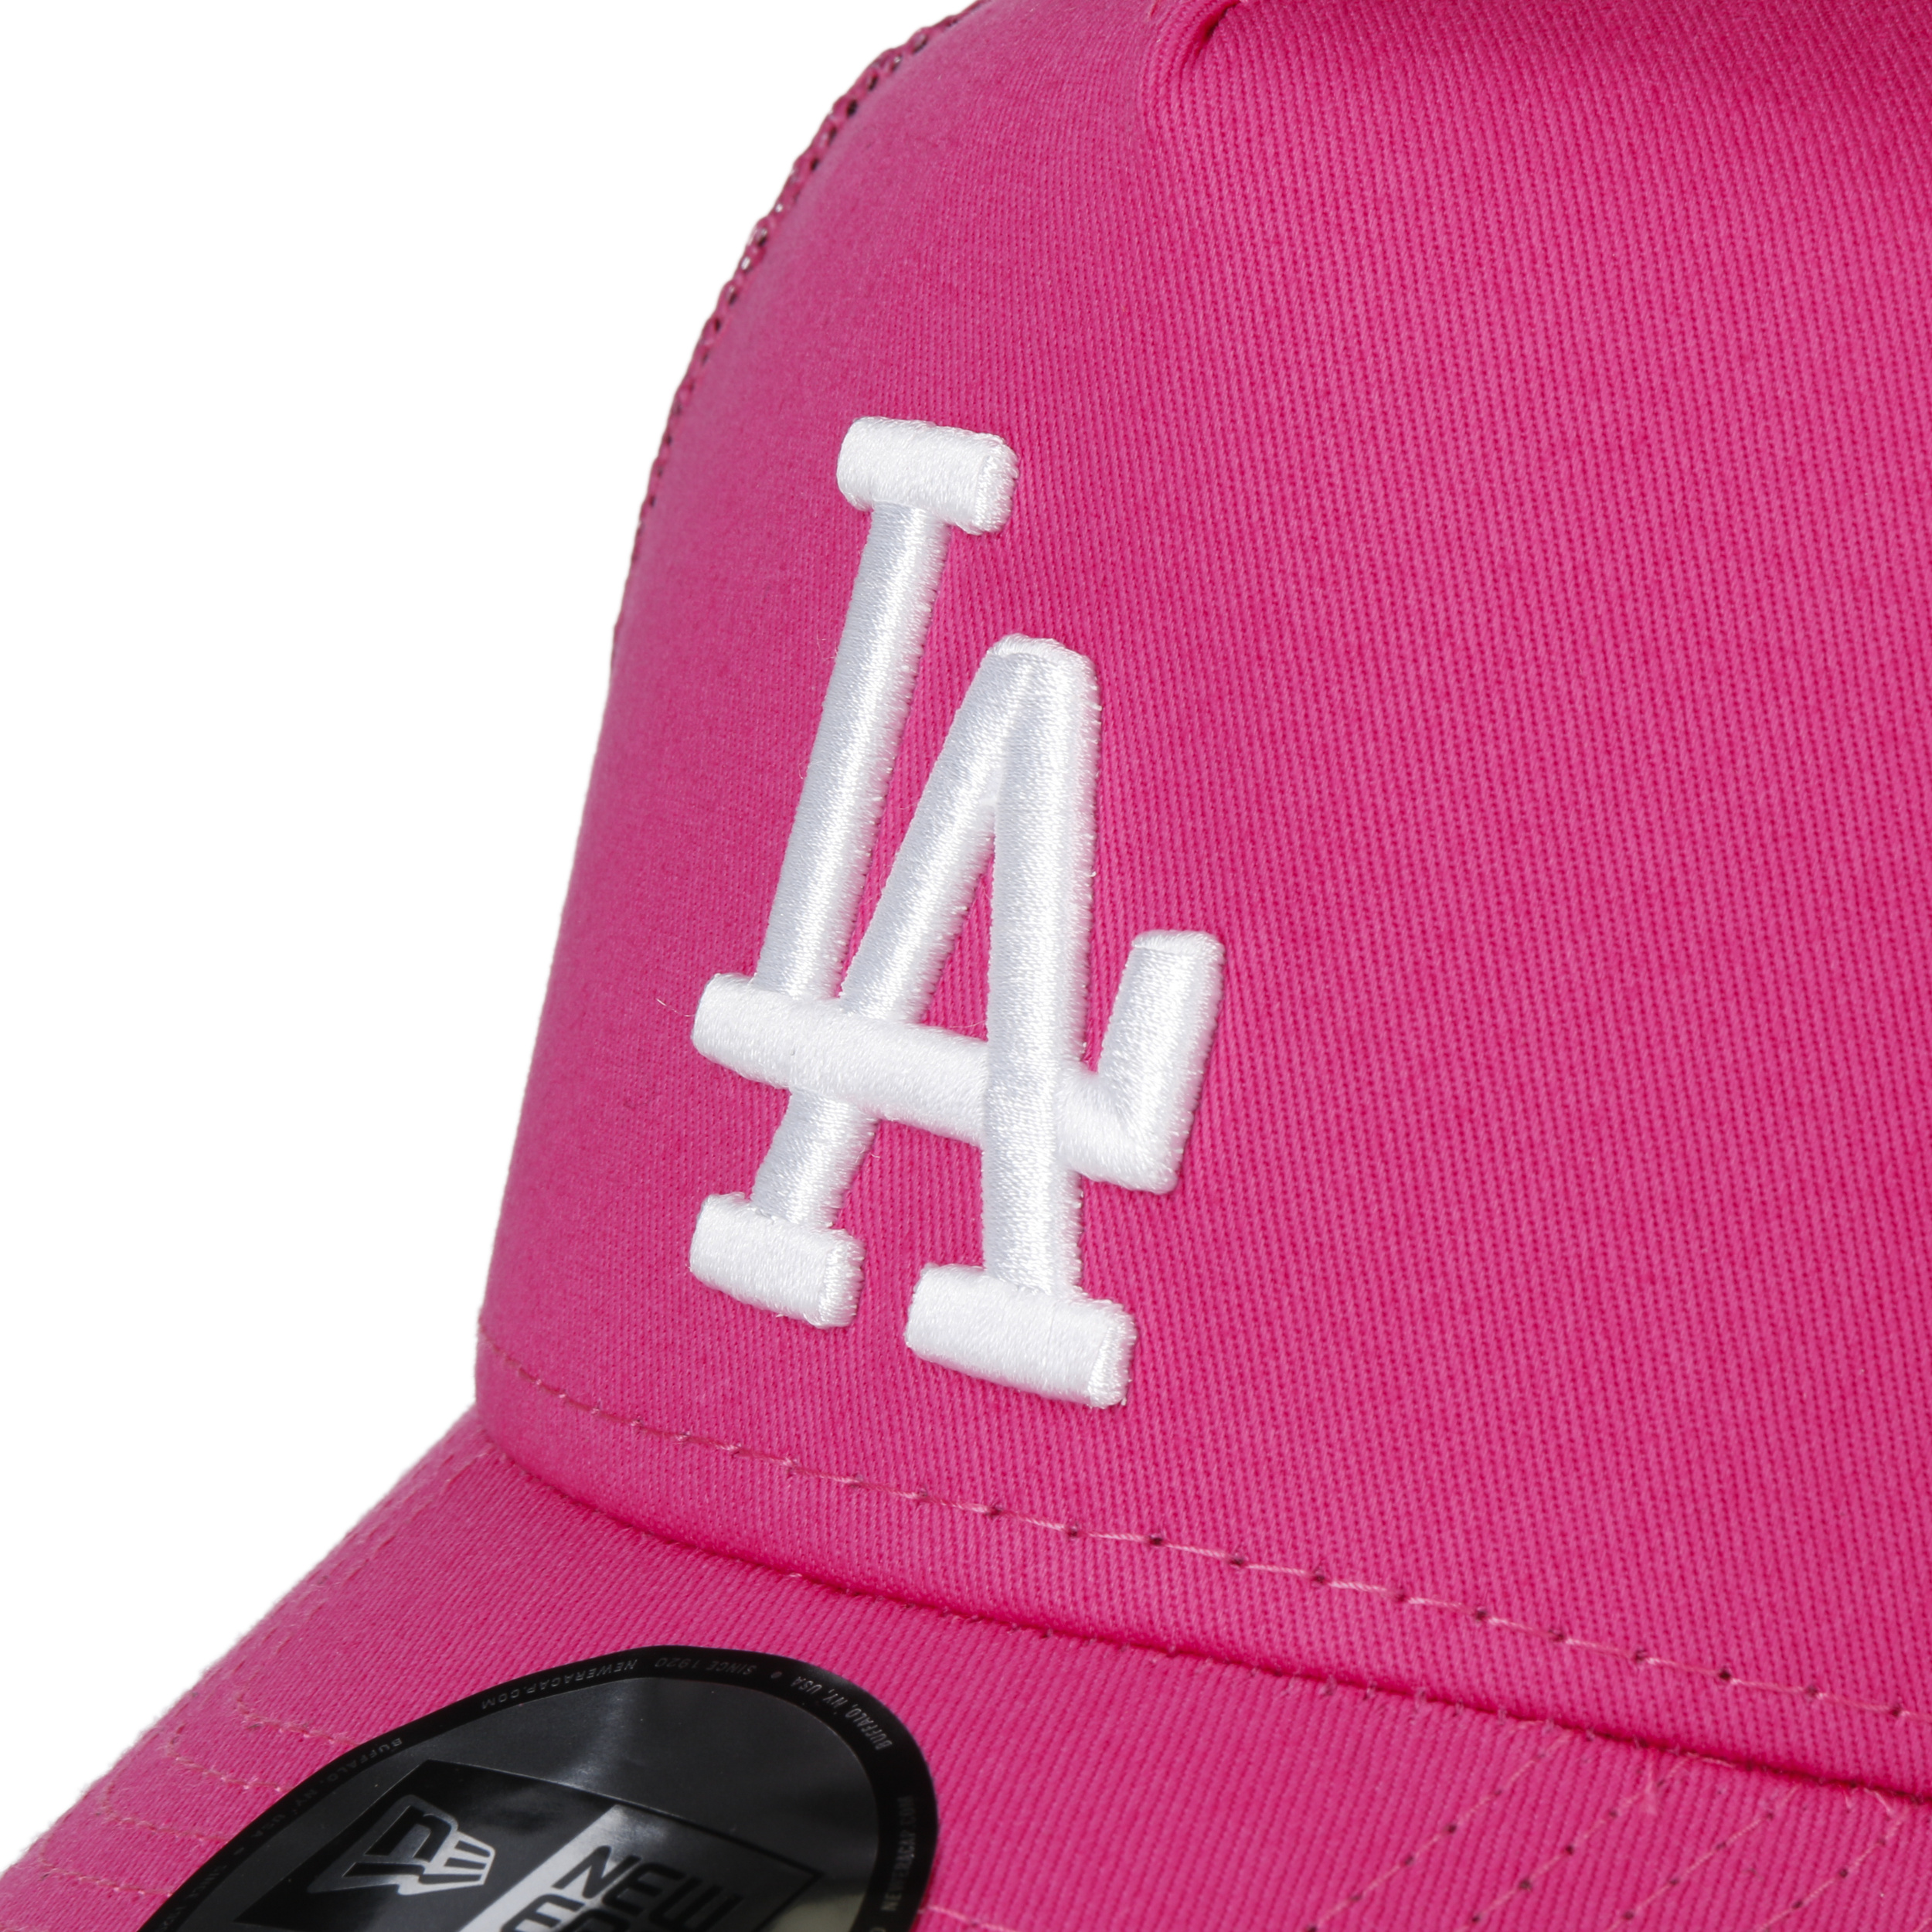 New Era La Dodgers Trucker Herren Kappe Pink 